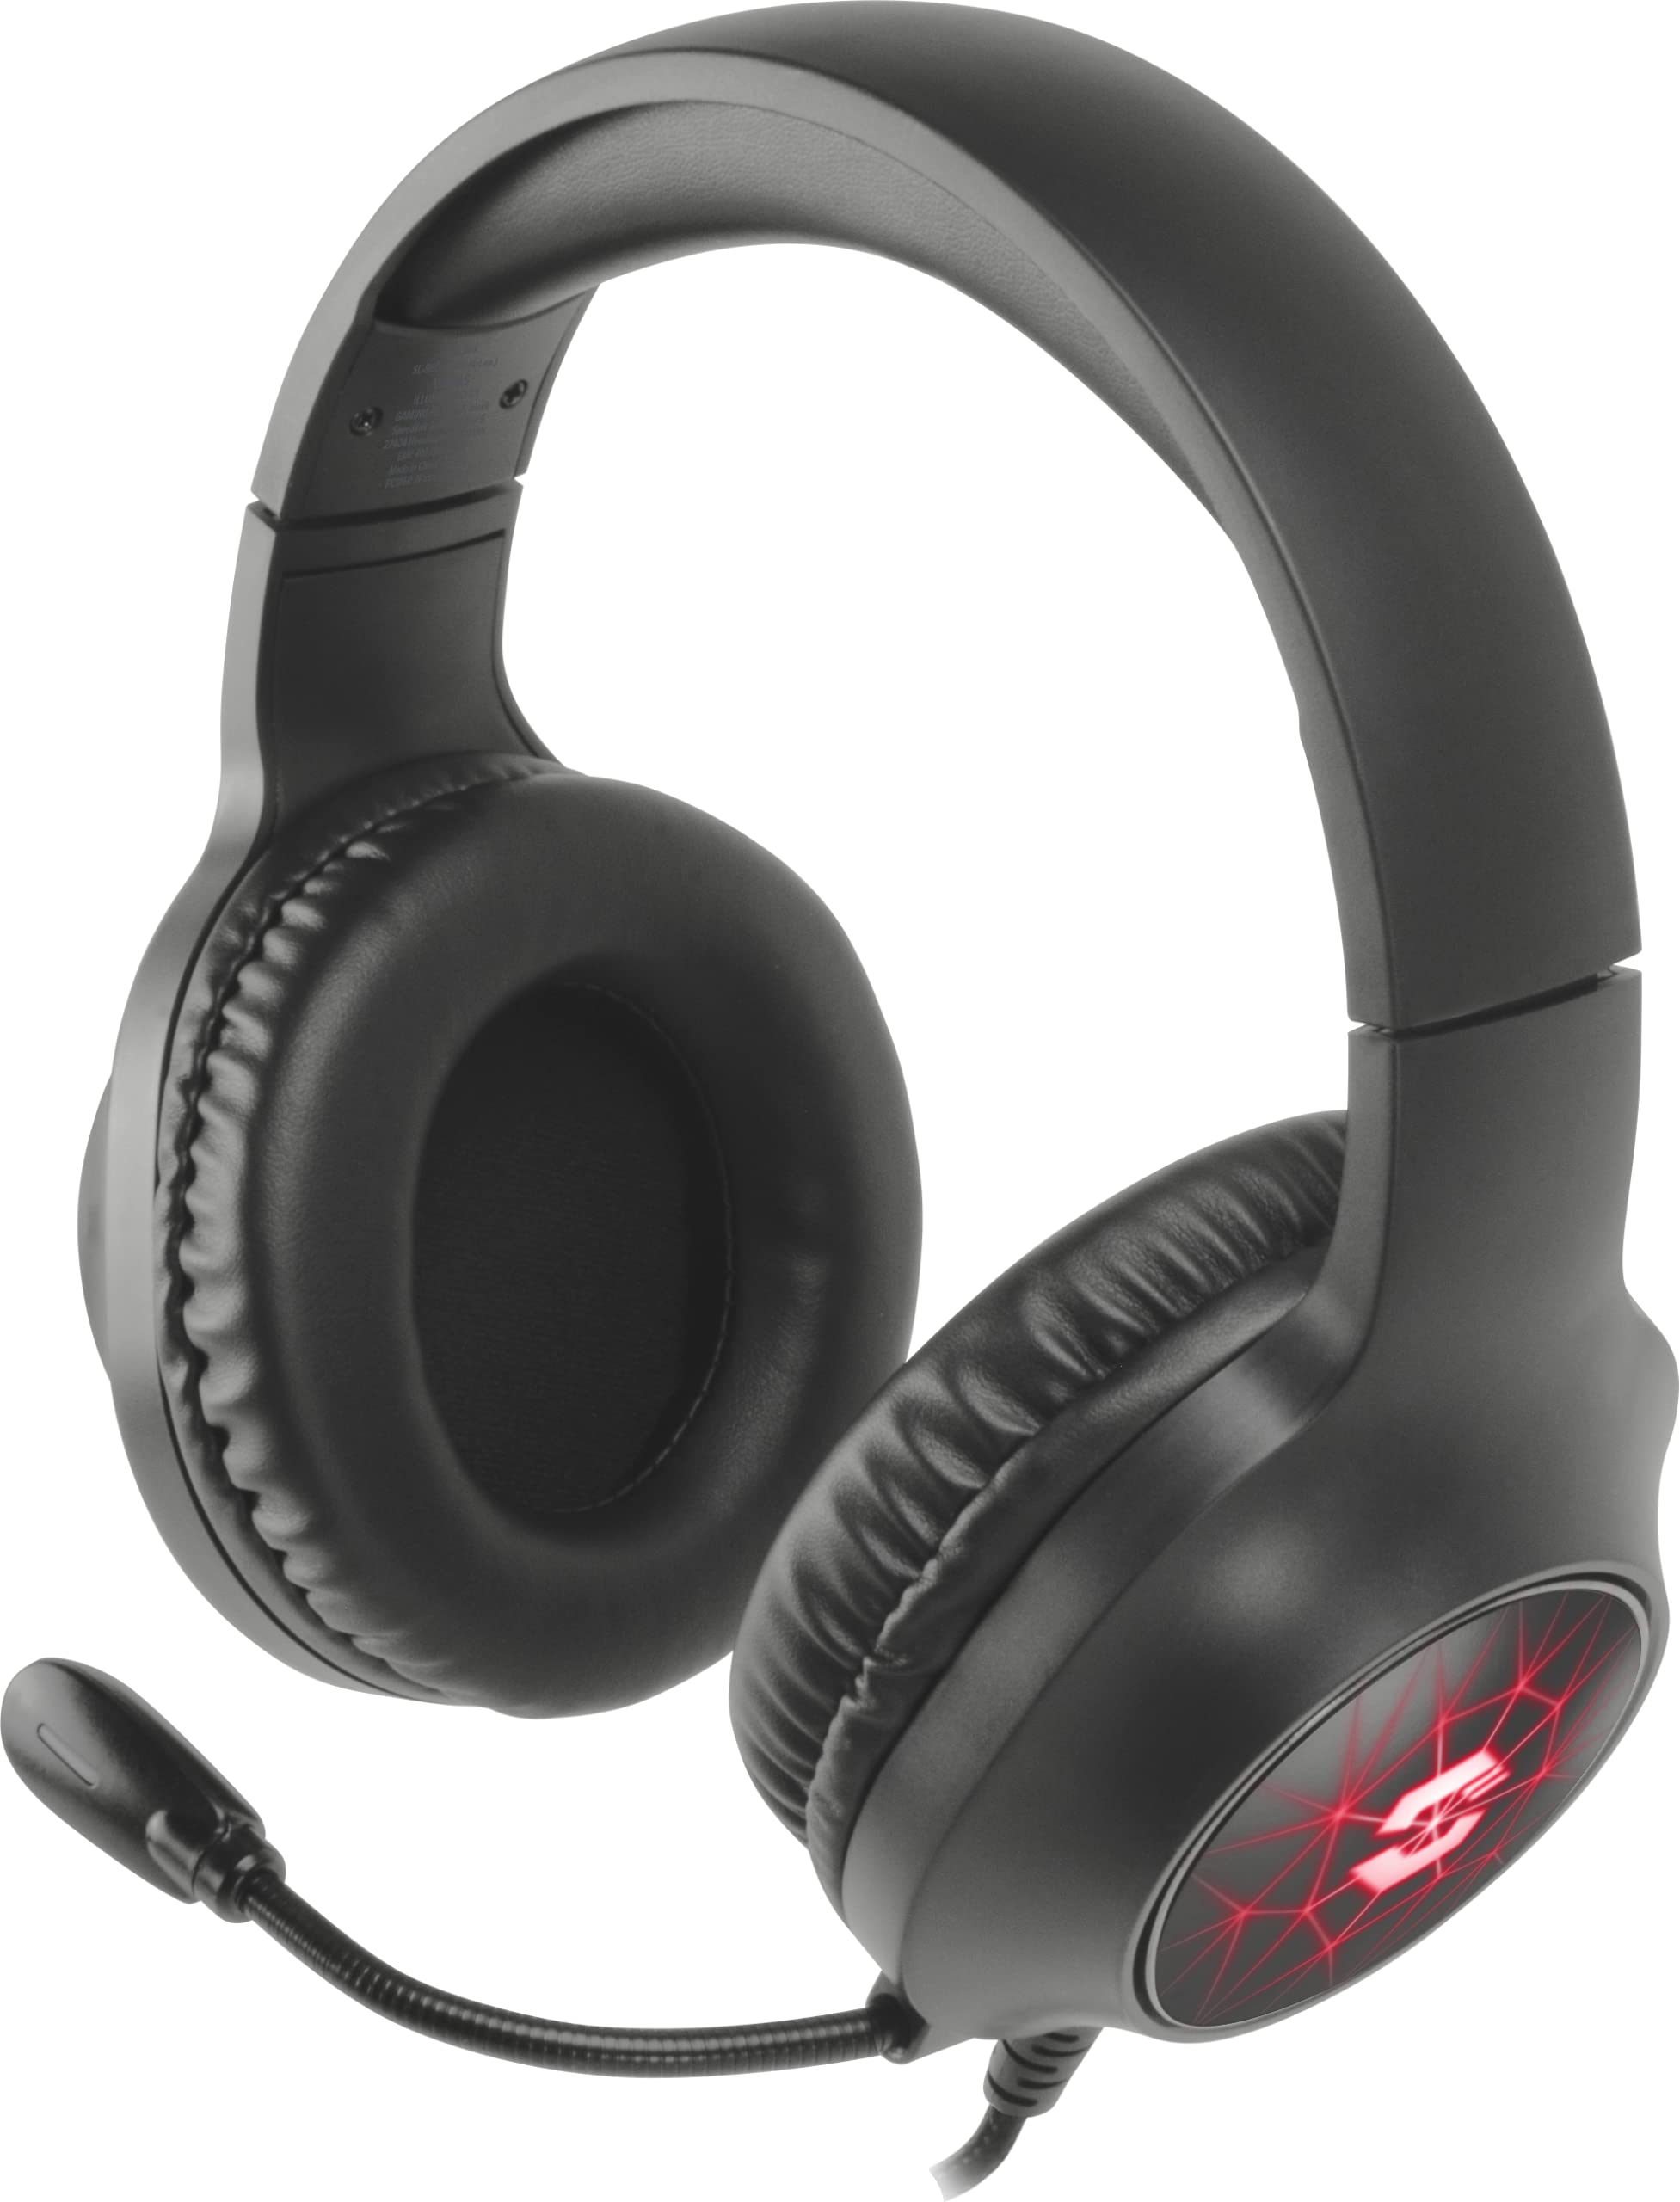 Speedlink VIRTAS kabelgebundenes 7.1 Gaming Headset mit Mikrofon – konfigurierbarer 7.1-Surround-Sound, USB-Anschluss, farbige RGB LED-Beleuchtung, Lautstärkeregelung via Kabelfernbedienung, schwarz